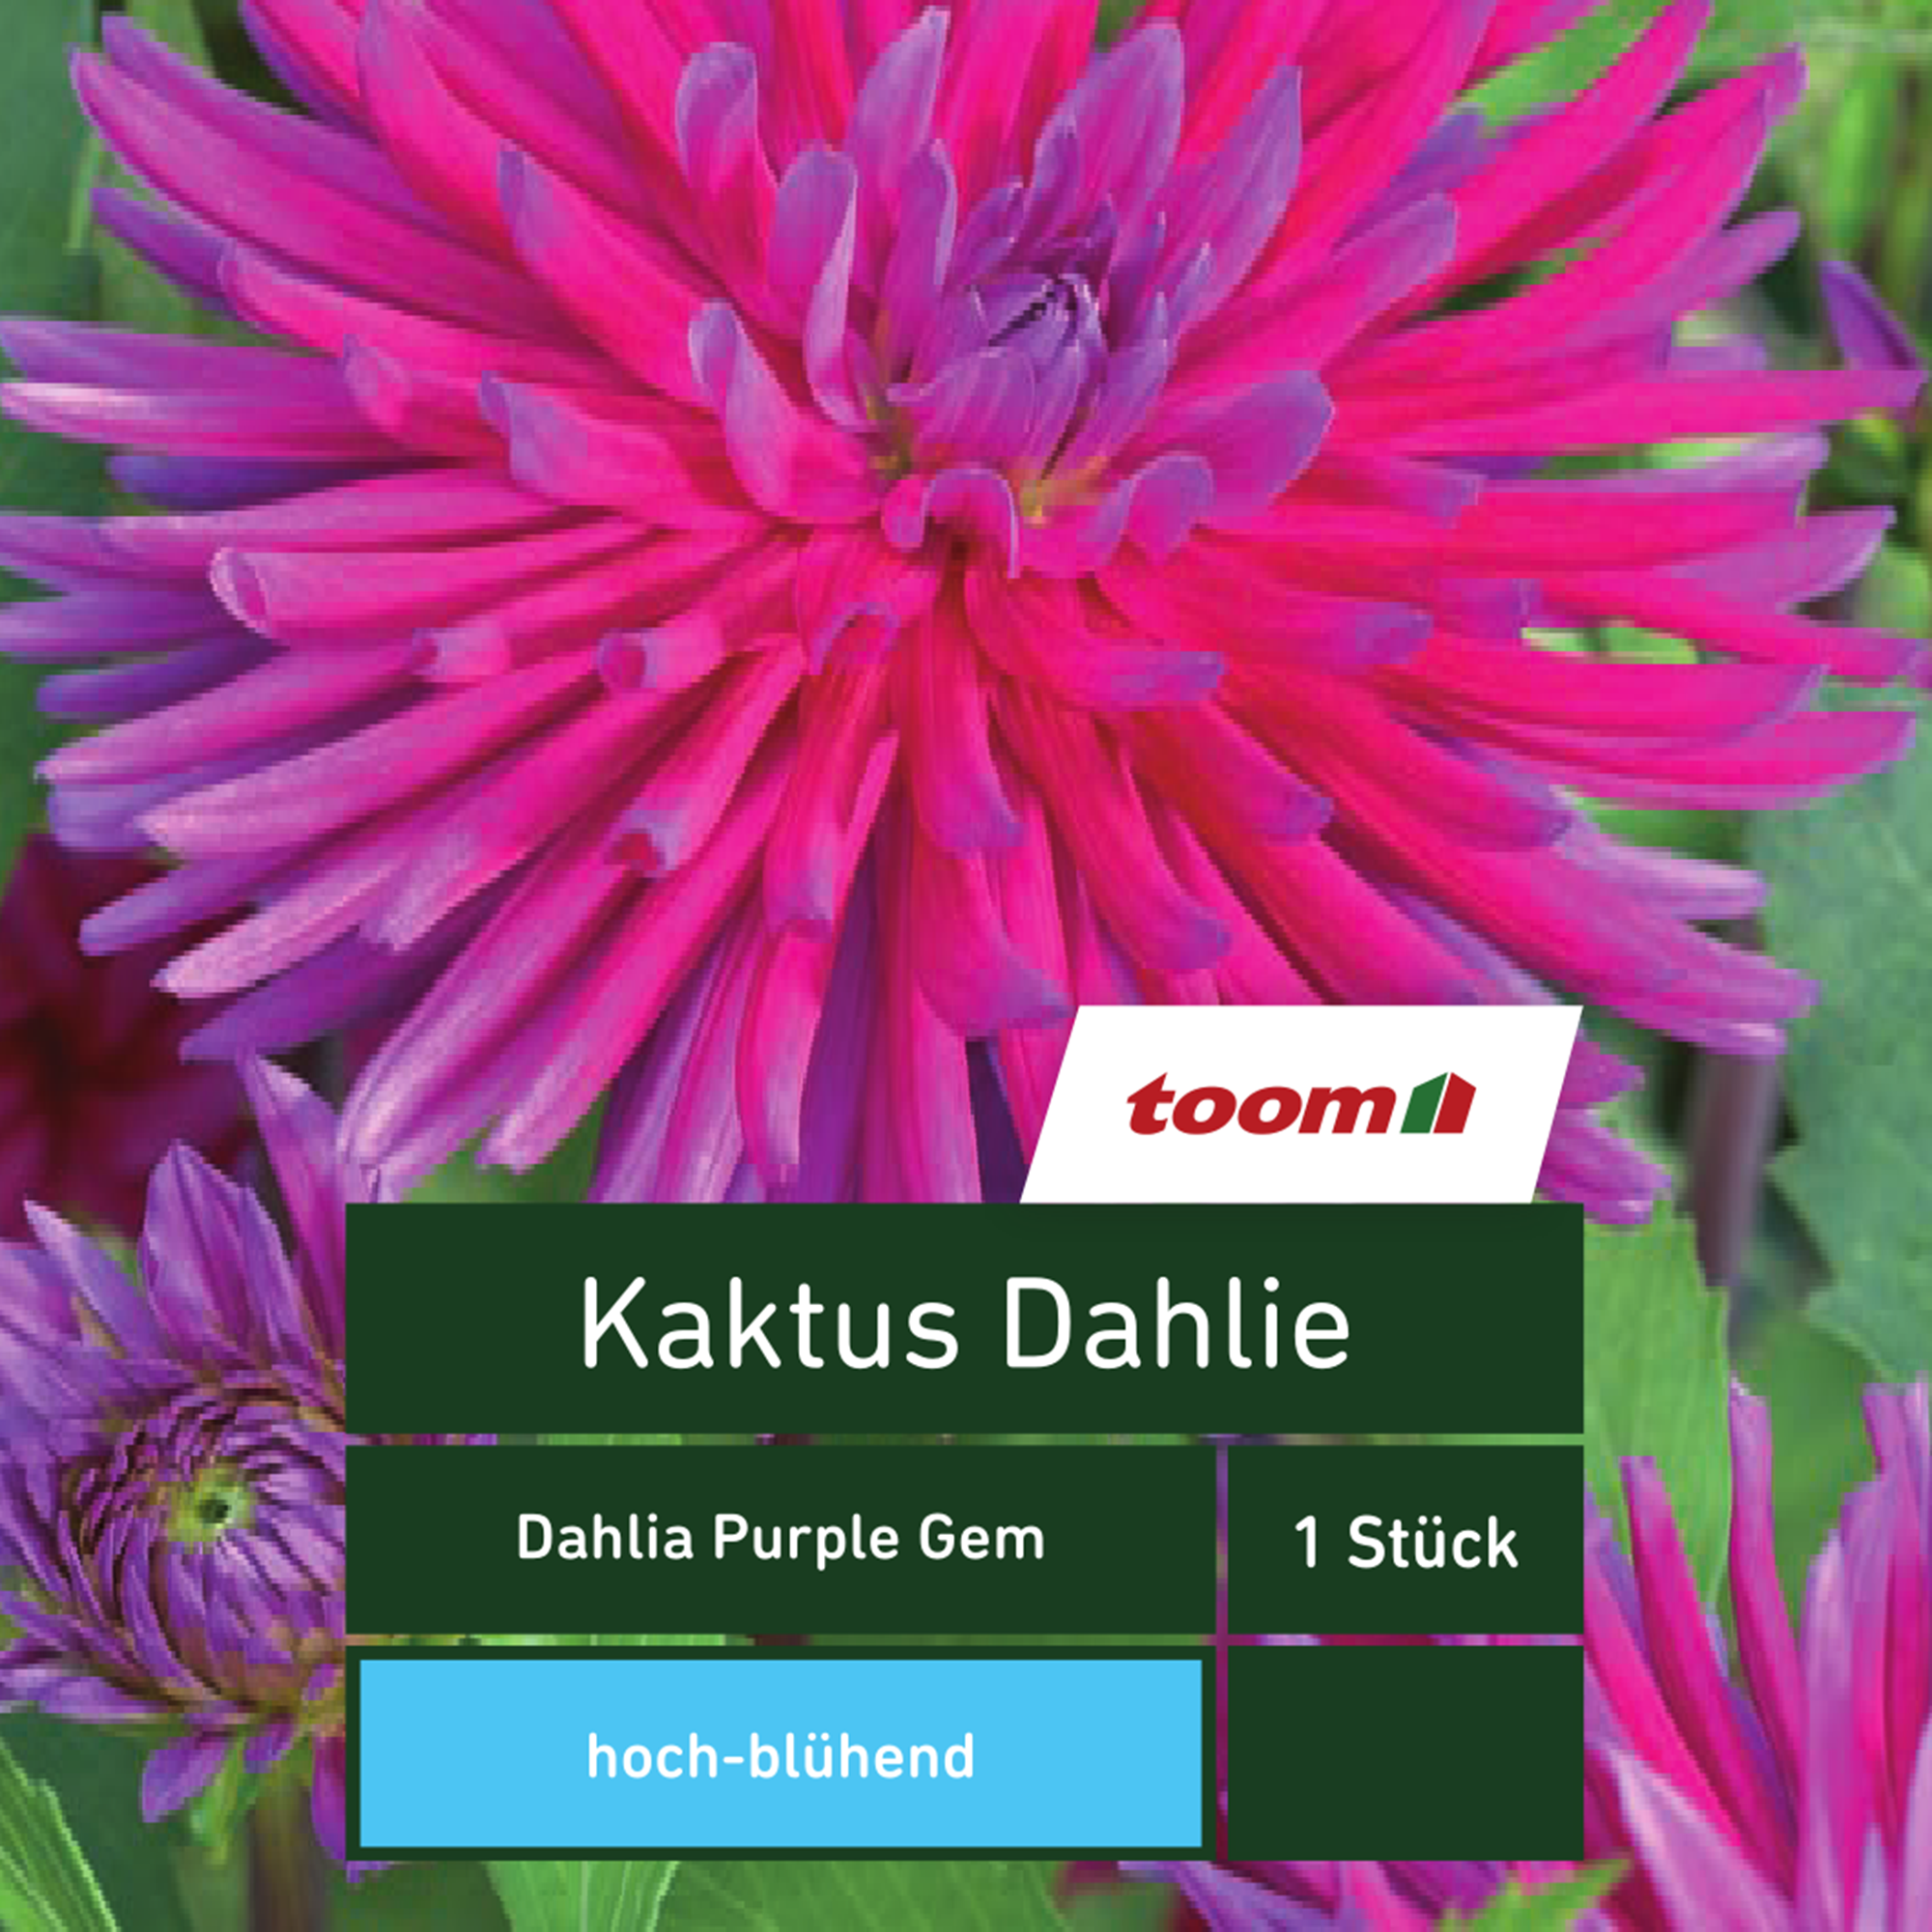 Kaktus-Dahlie 'Dahlia Purple Gem', 1 Stück, rosa + product picture